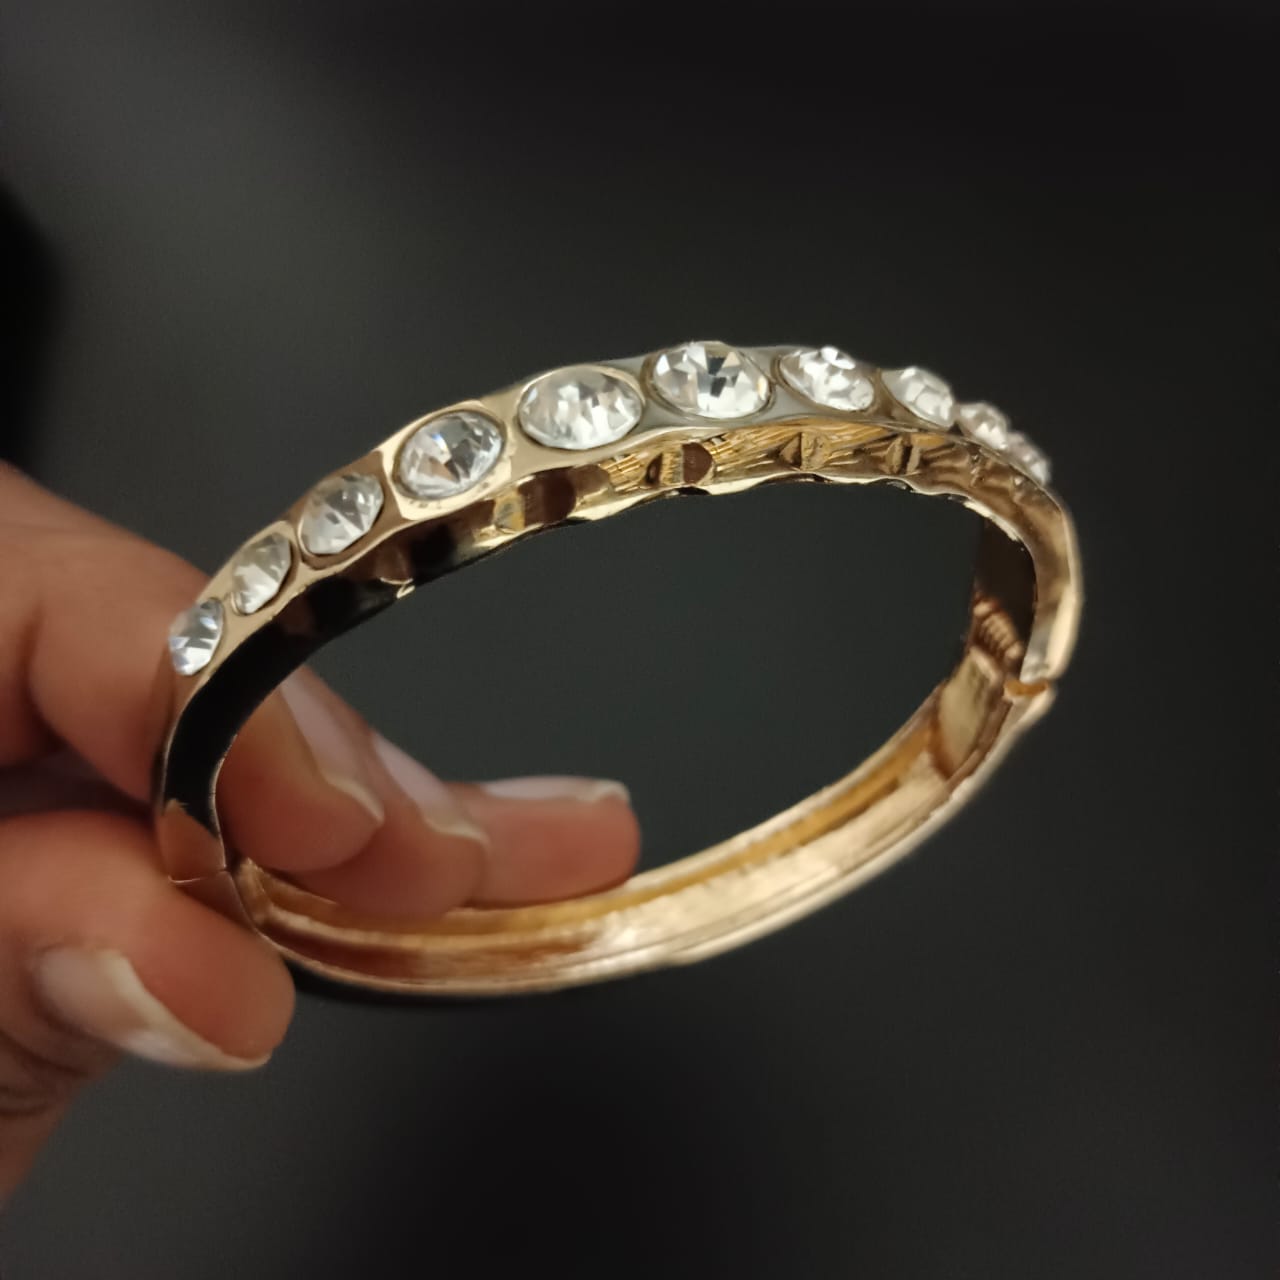 New Round Diamond Design Golden Bracelet For Women and Girl-Jack Marc